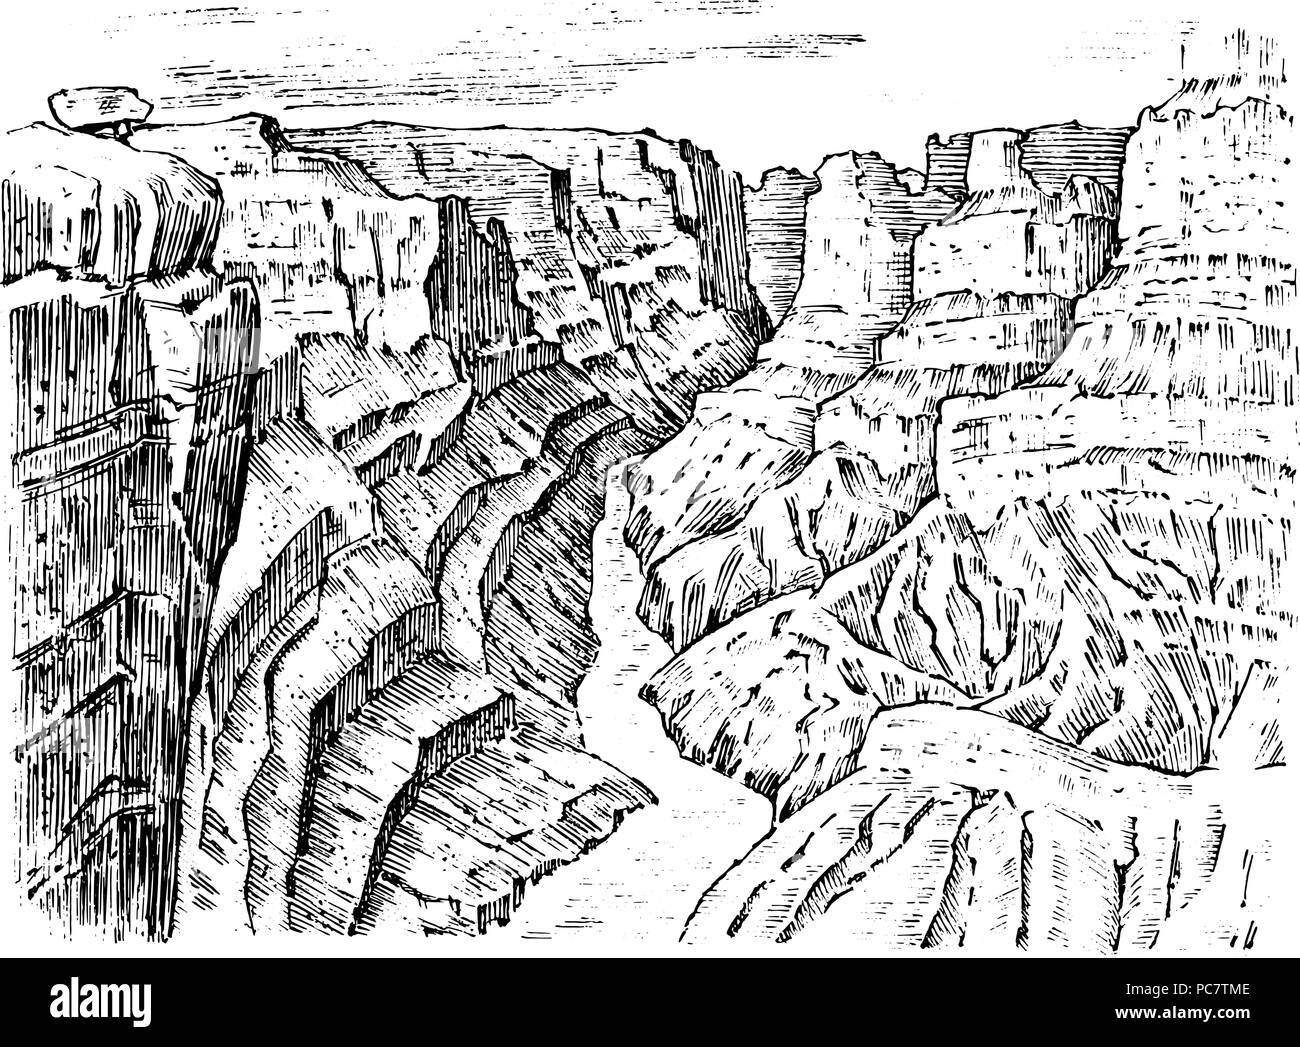 Grand Canyon en Arizona, aux États-Unis. Paysage monochrome graphique. Vieux croquis dessinés à la main, gravée. Des pics de montagne avec des forêts. Vector illustration pour une affiche ou une étiquette. Illustration de Vecteur